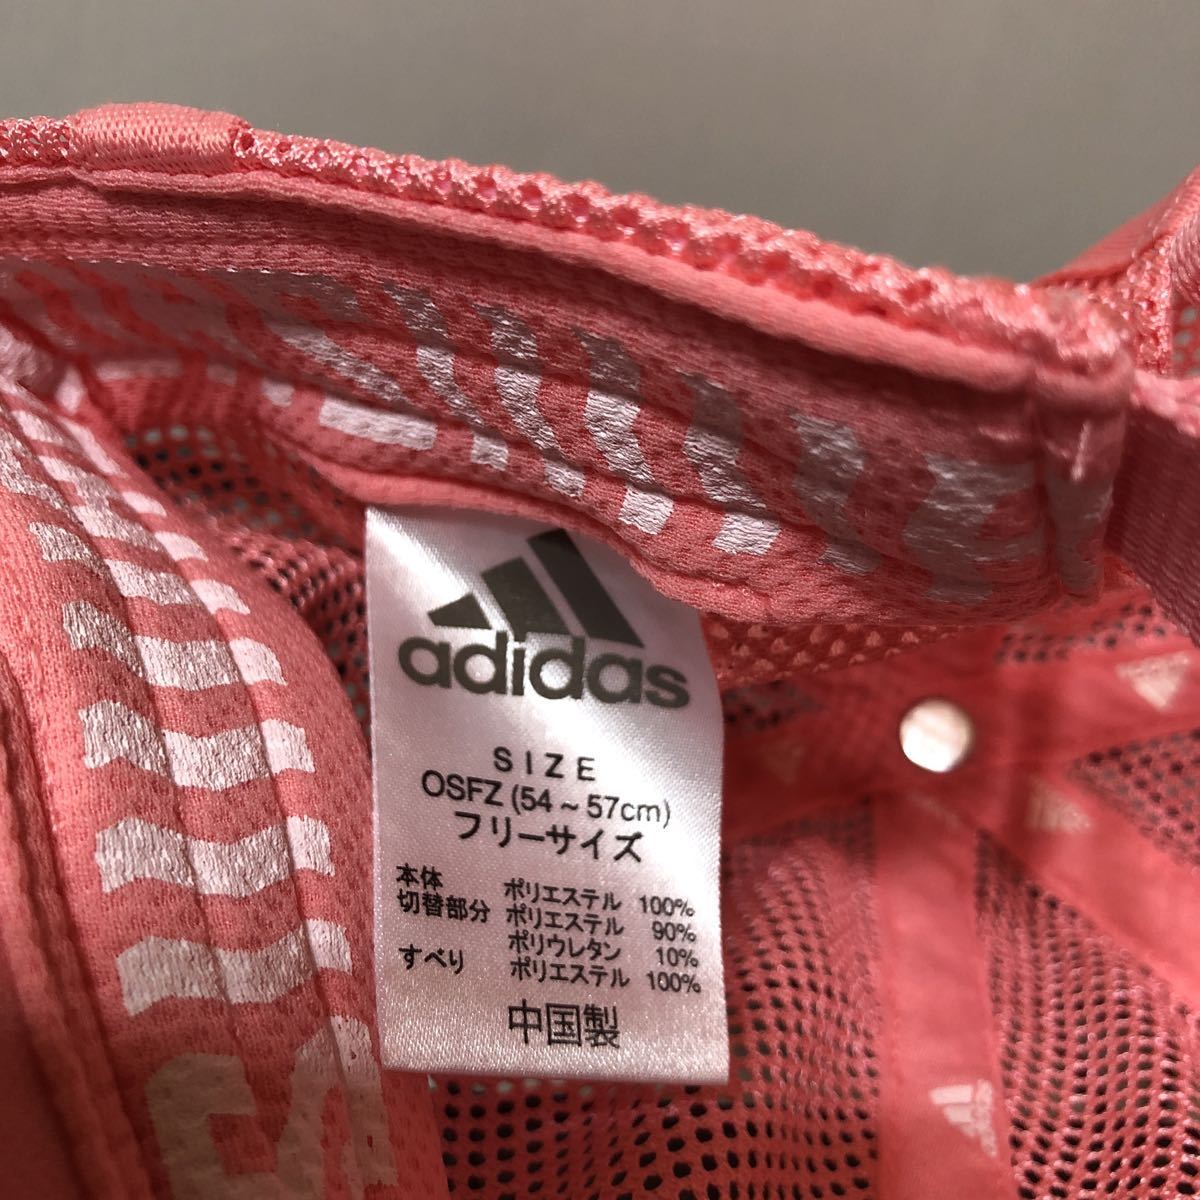  Adidas сетчатая кепка розовый 54~57cm GNS12-FK0887 навес бег колпак 